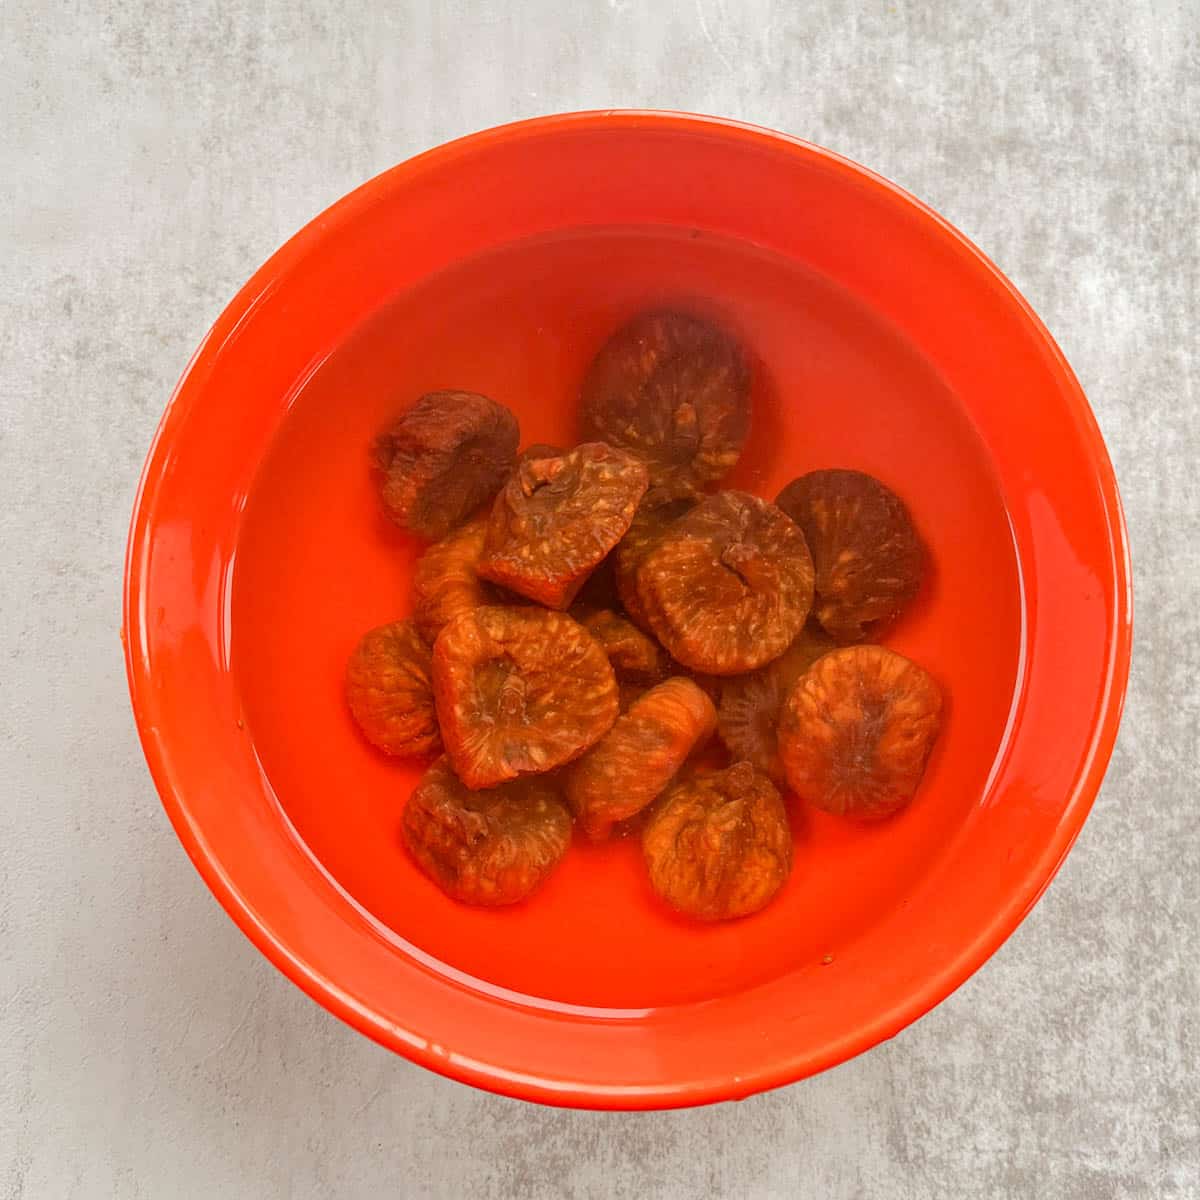 dried figs soaking in water in an orange bowl